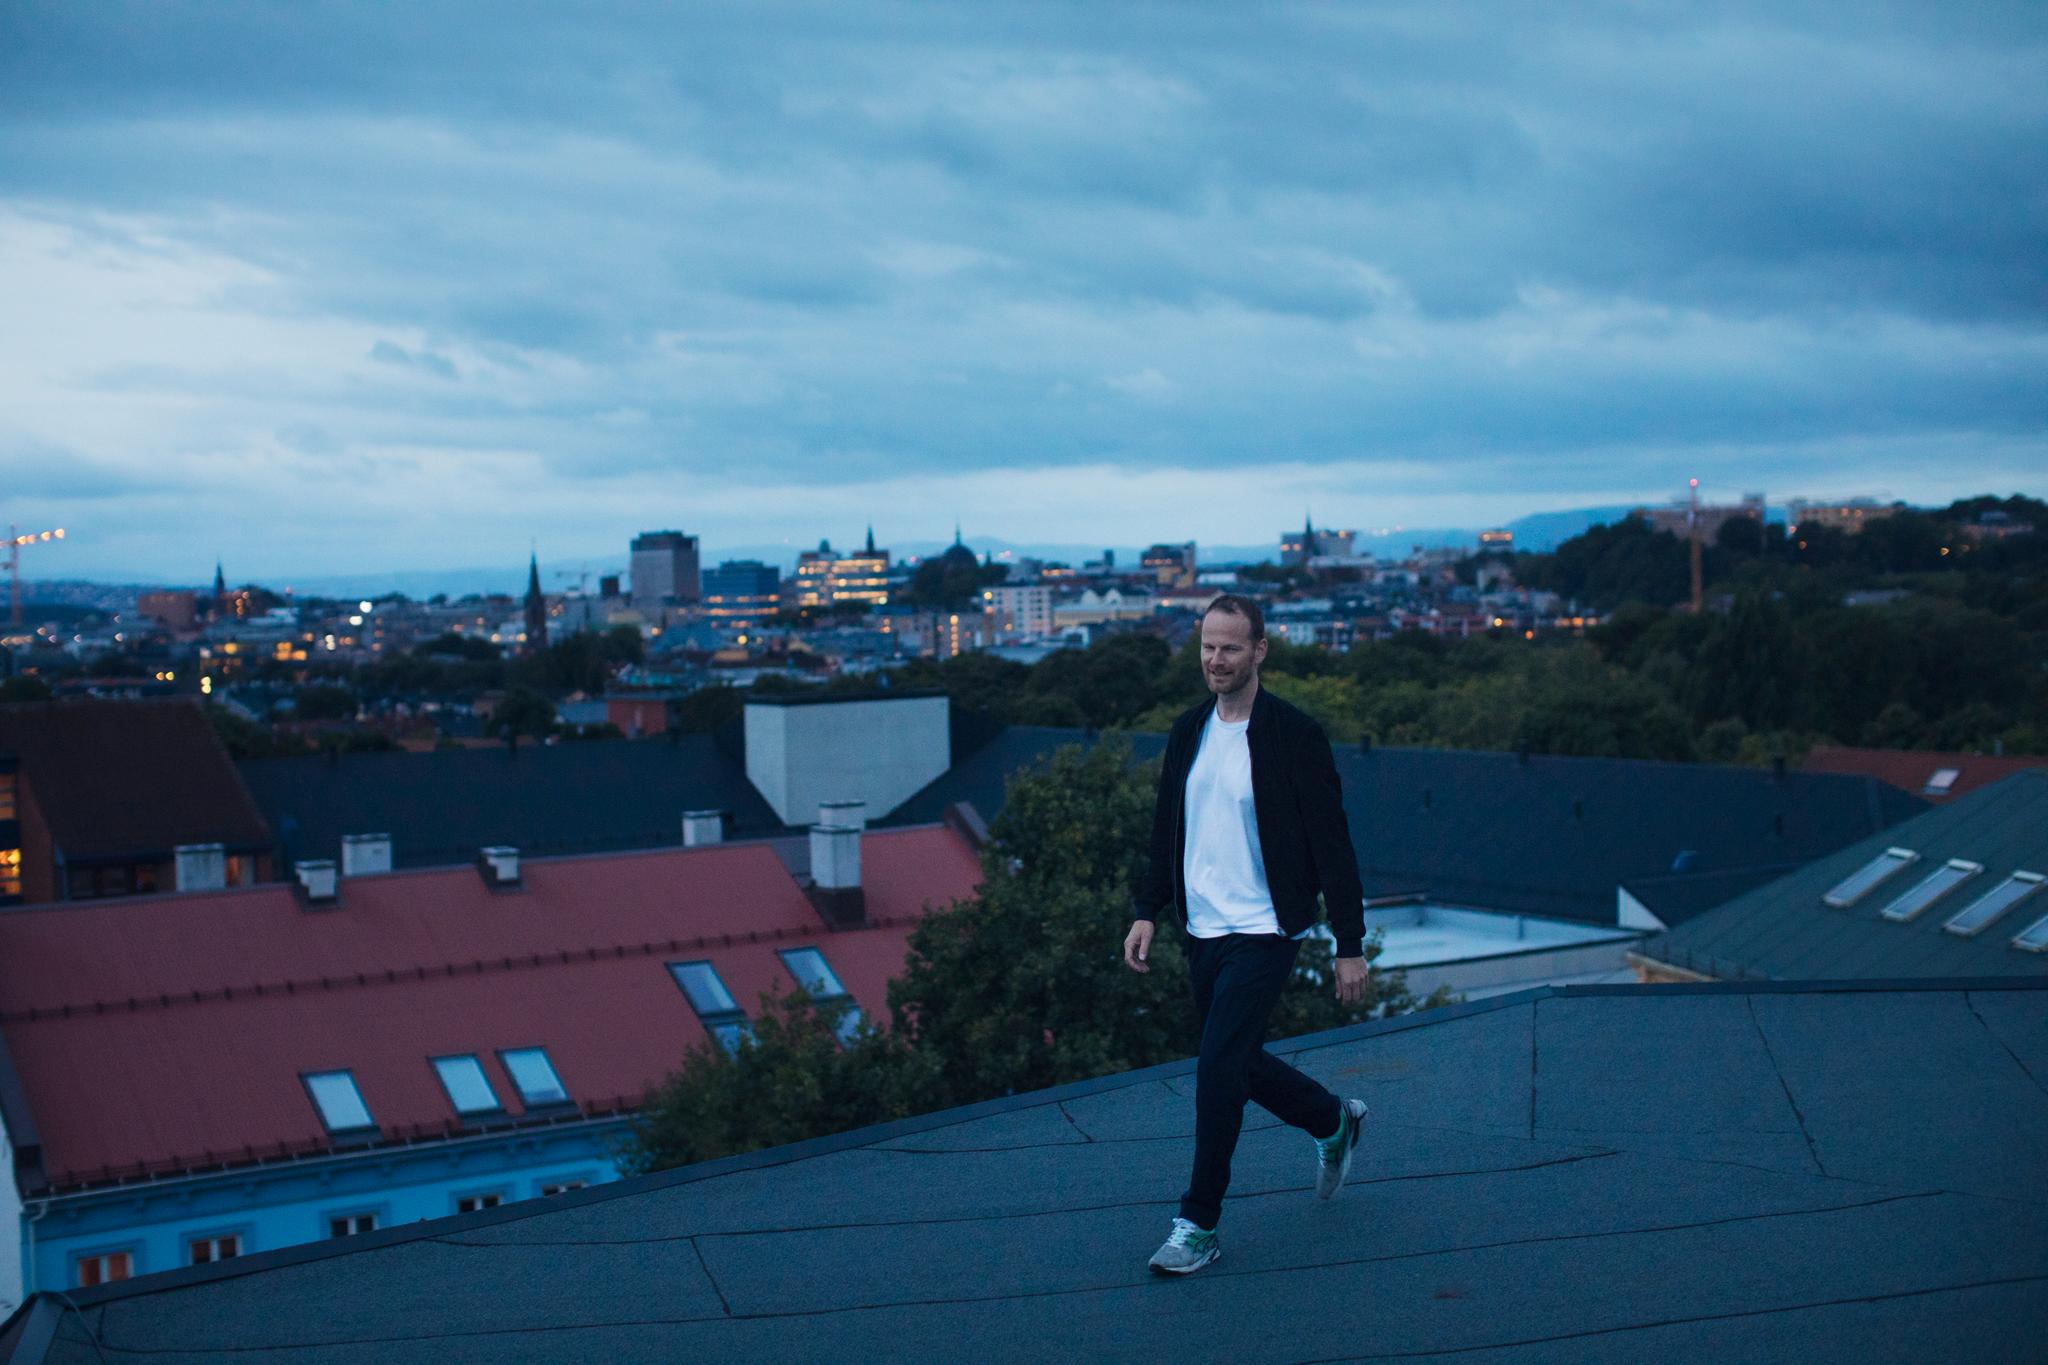 Regissør Trier satser på kinopremiere for siste film i sin Oslo-trilogi denne høsten.